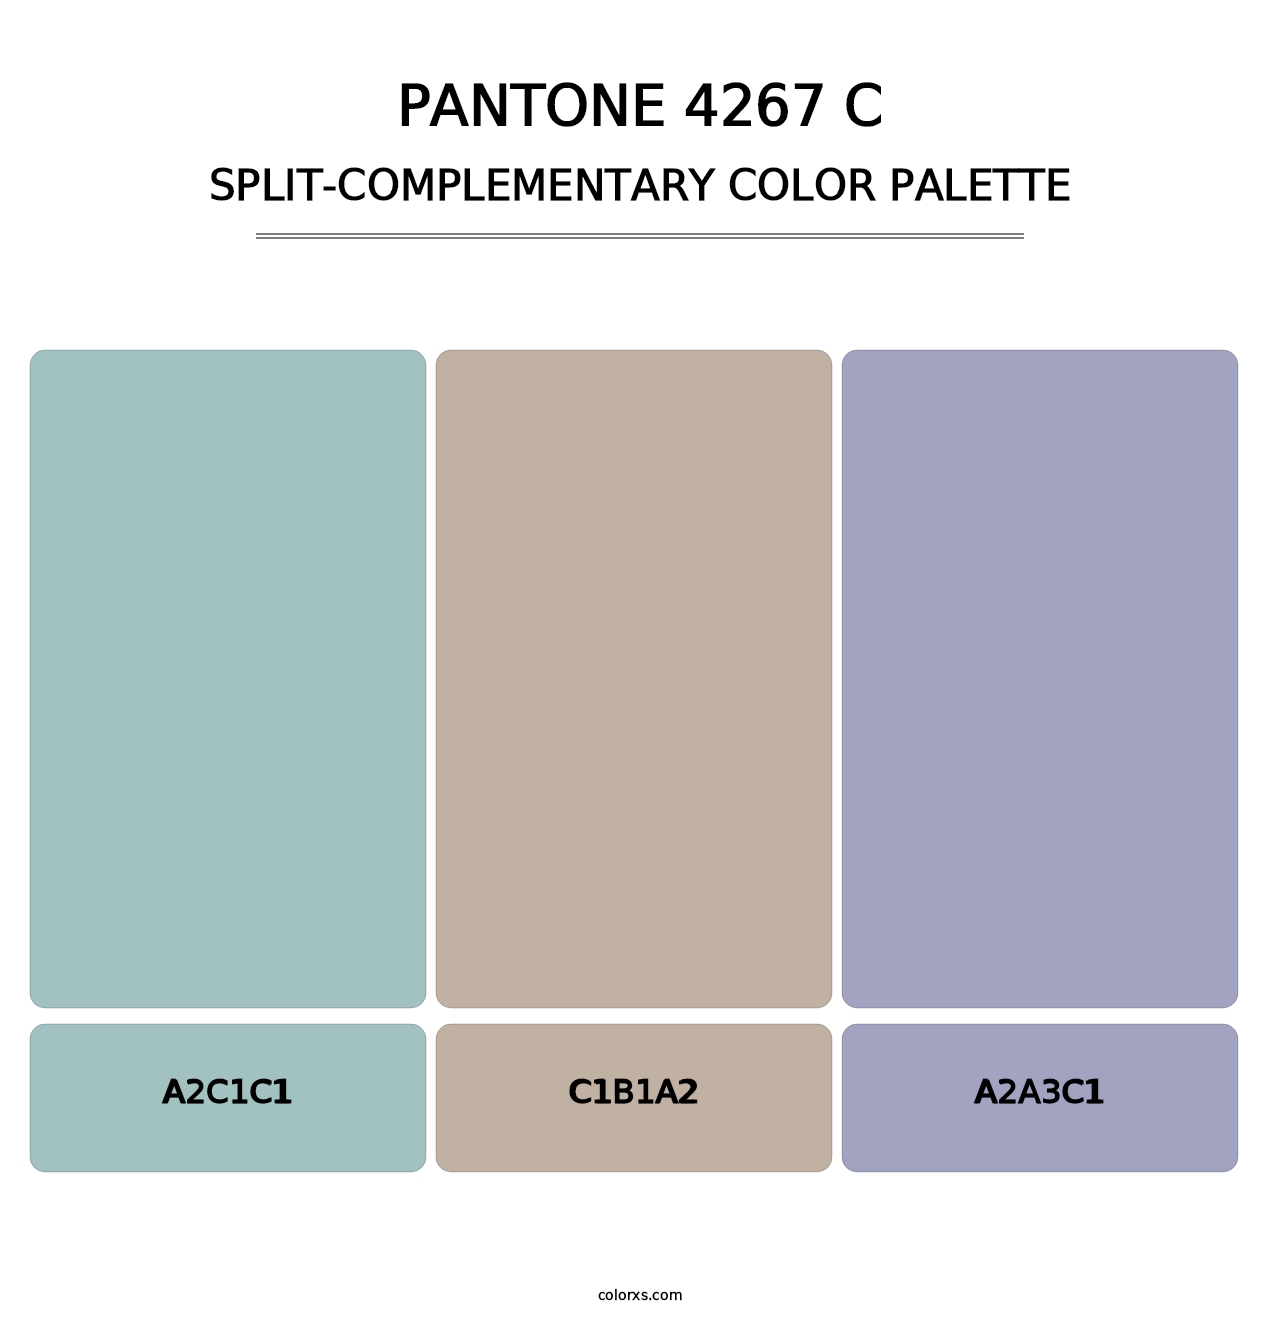 PANTONE 4267 C - Split-Complementary Color Palette